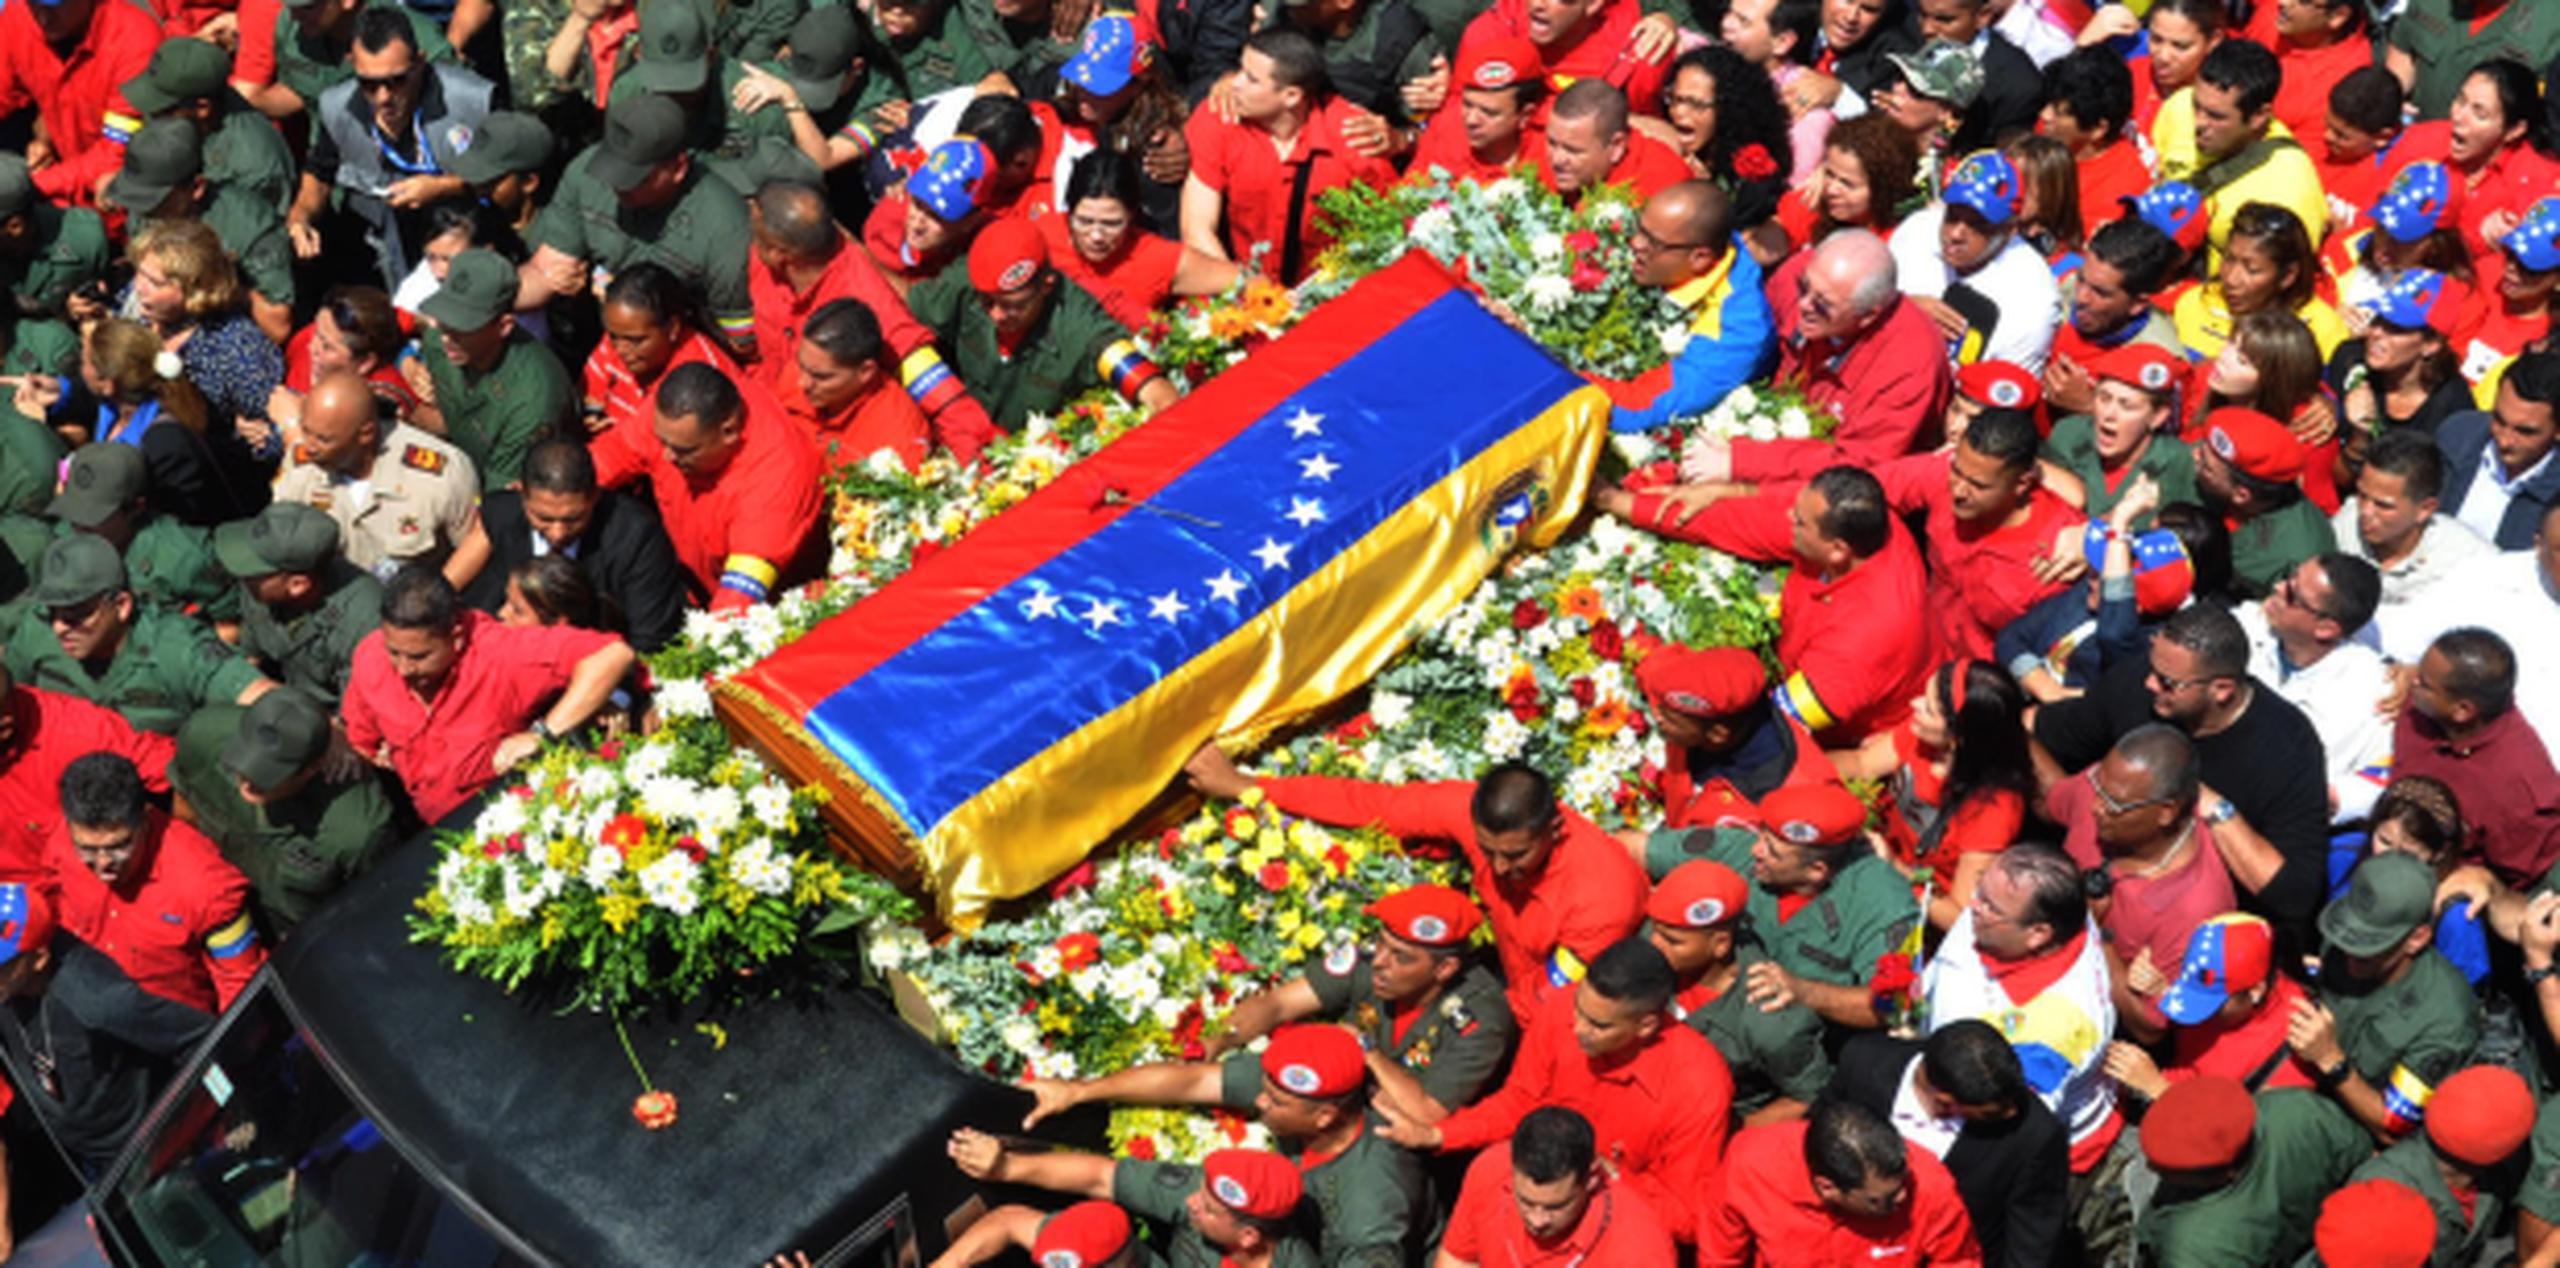 El paso de simpatizantes de Chávez frente a su ataúd comenzó el miércoles por la noche y se extendió toda la noche y seguía esta mañana, según indicó la televisora oficial. (AFP)